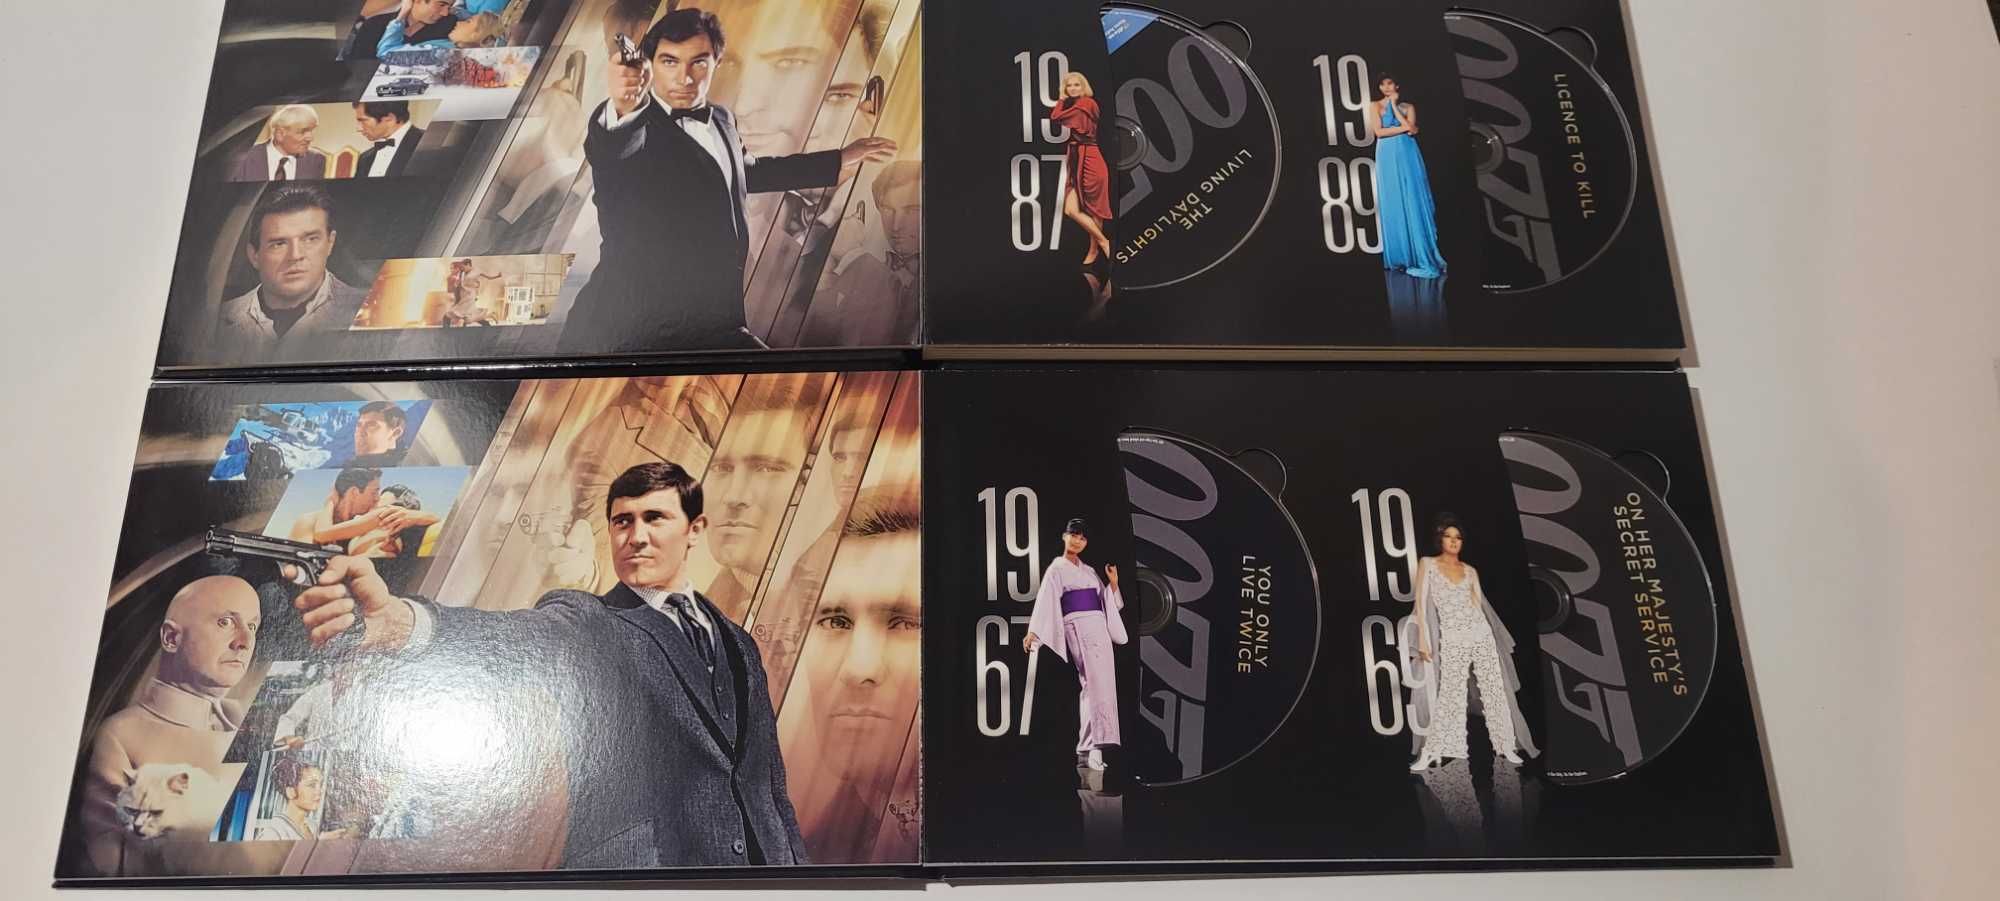 007 James Bond pełna kolekcja Blu-ray